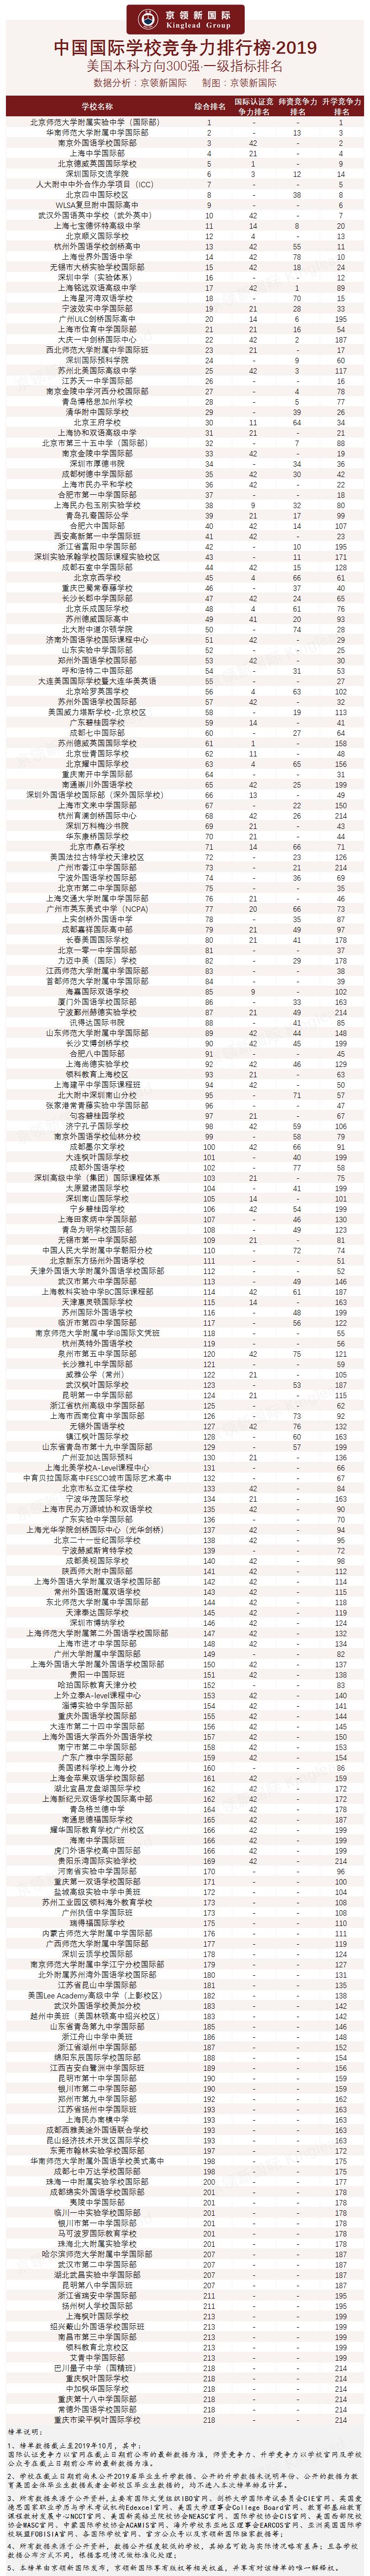 快看！2019年中国国际学校竞争力排行榜发布